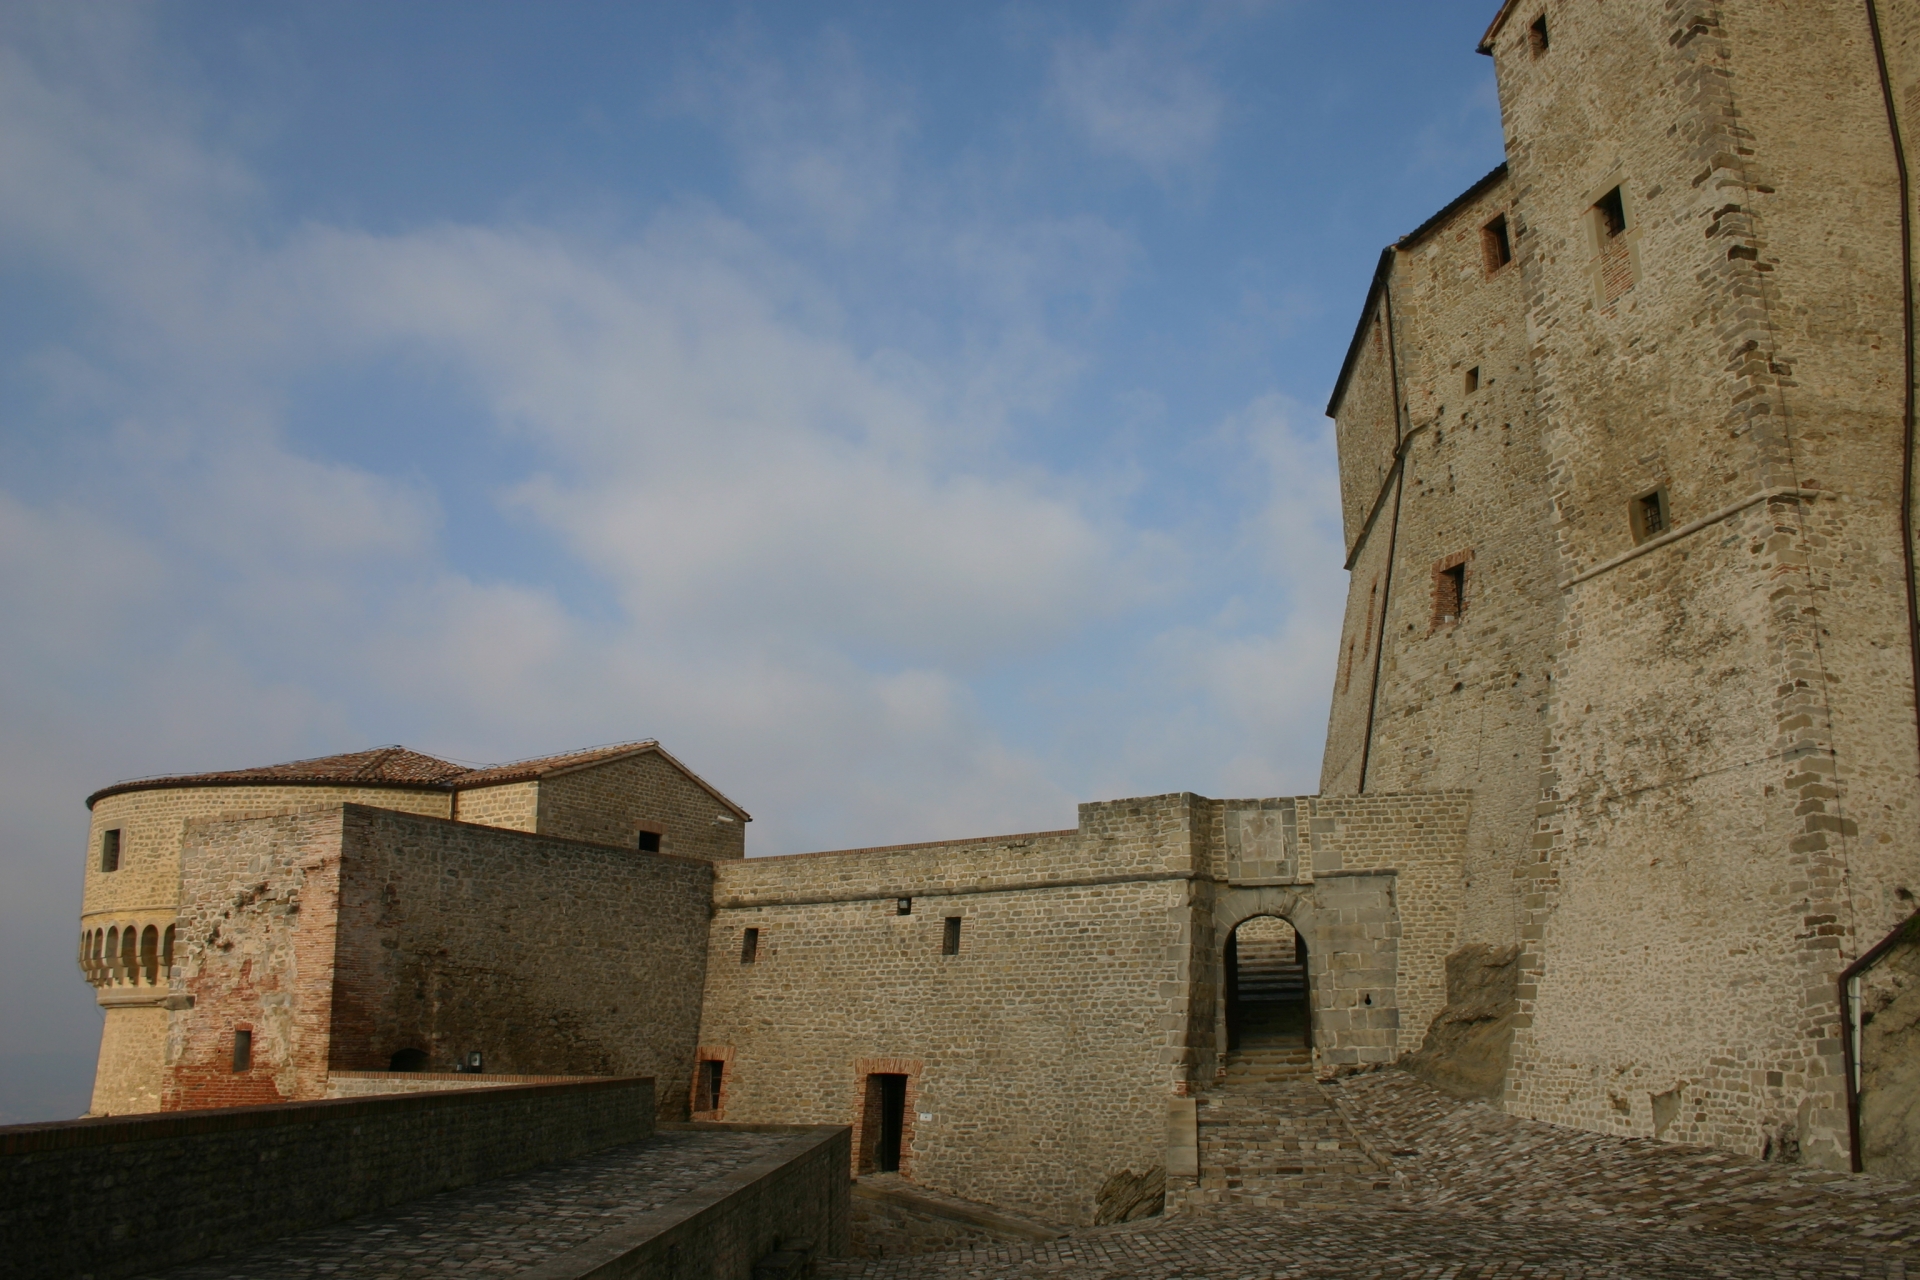 Prima piazza d'armi della Fortezza di San Leo Foto(s) von Comune di San Leo